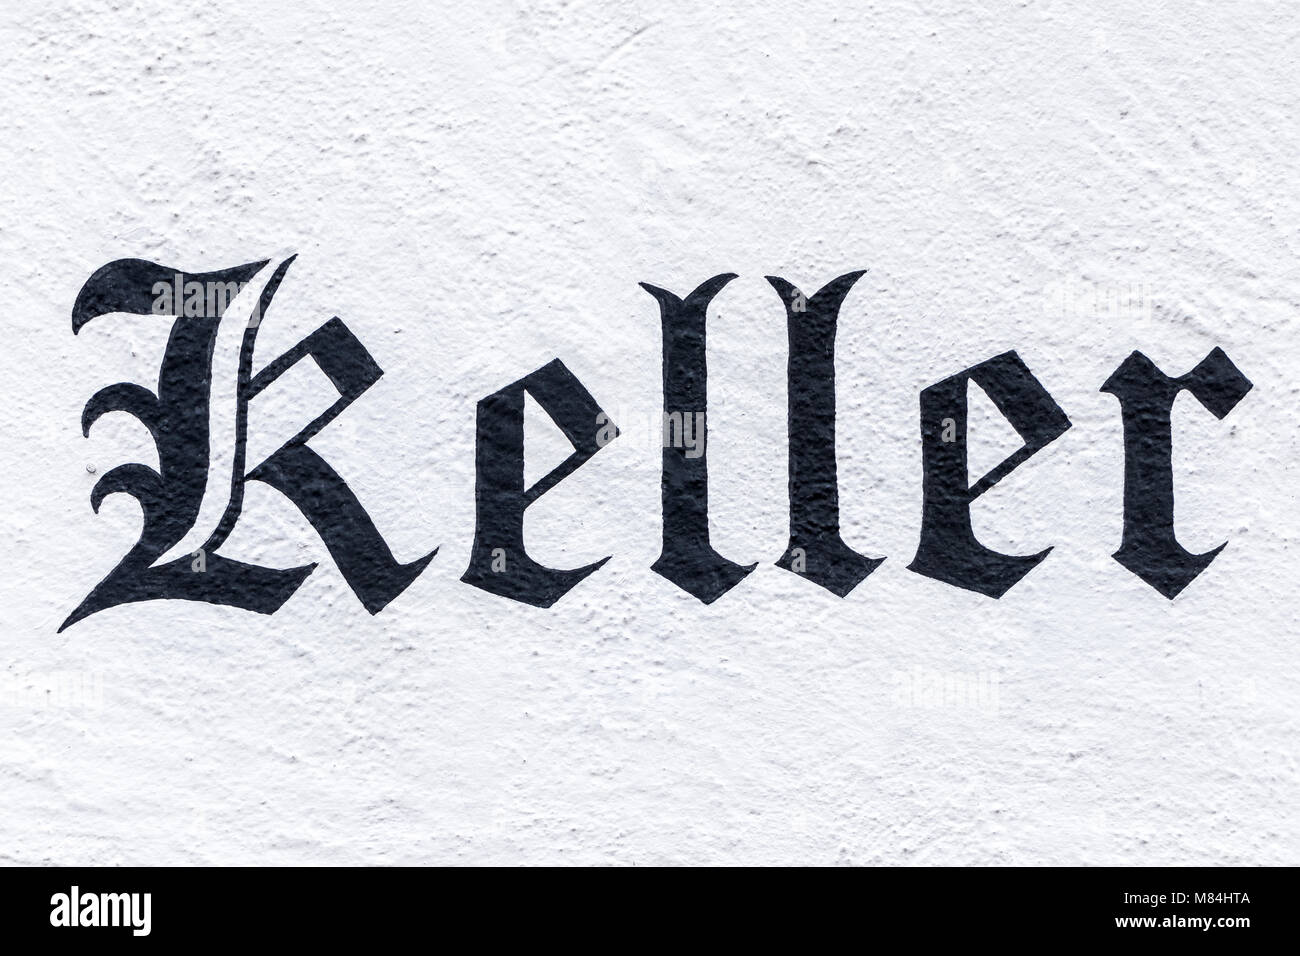 Deutsche Wort Keller, Englisch Keller, in Fraktur Schrift an der Wand gemalt Stockfoto